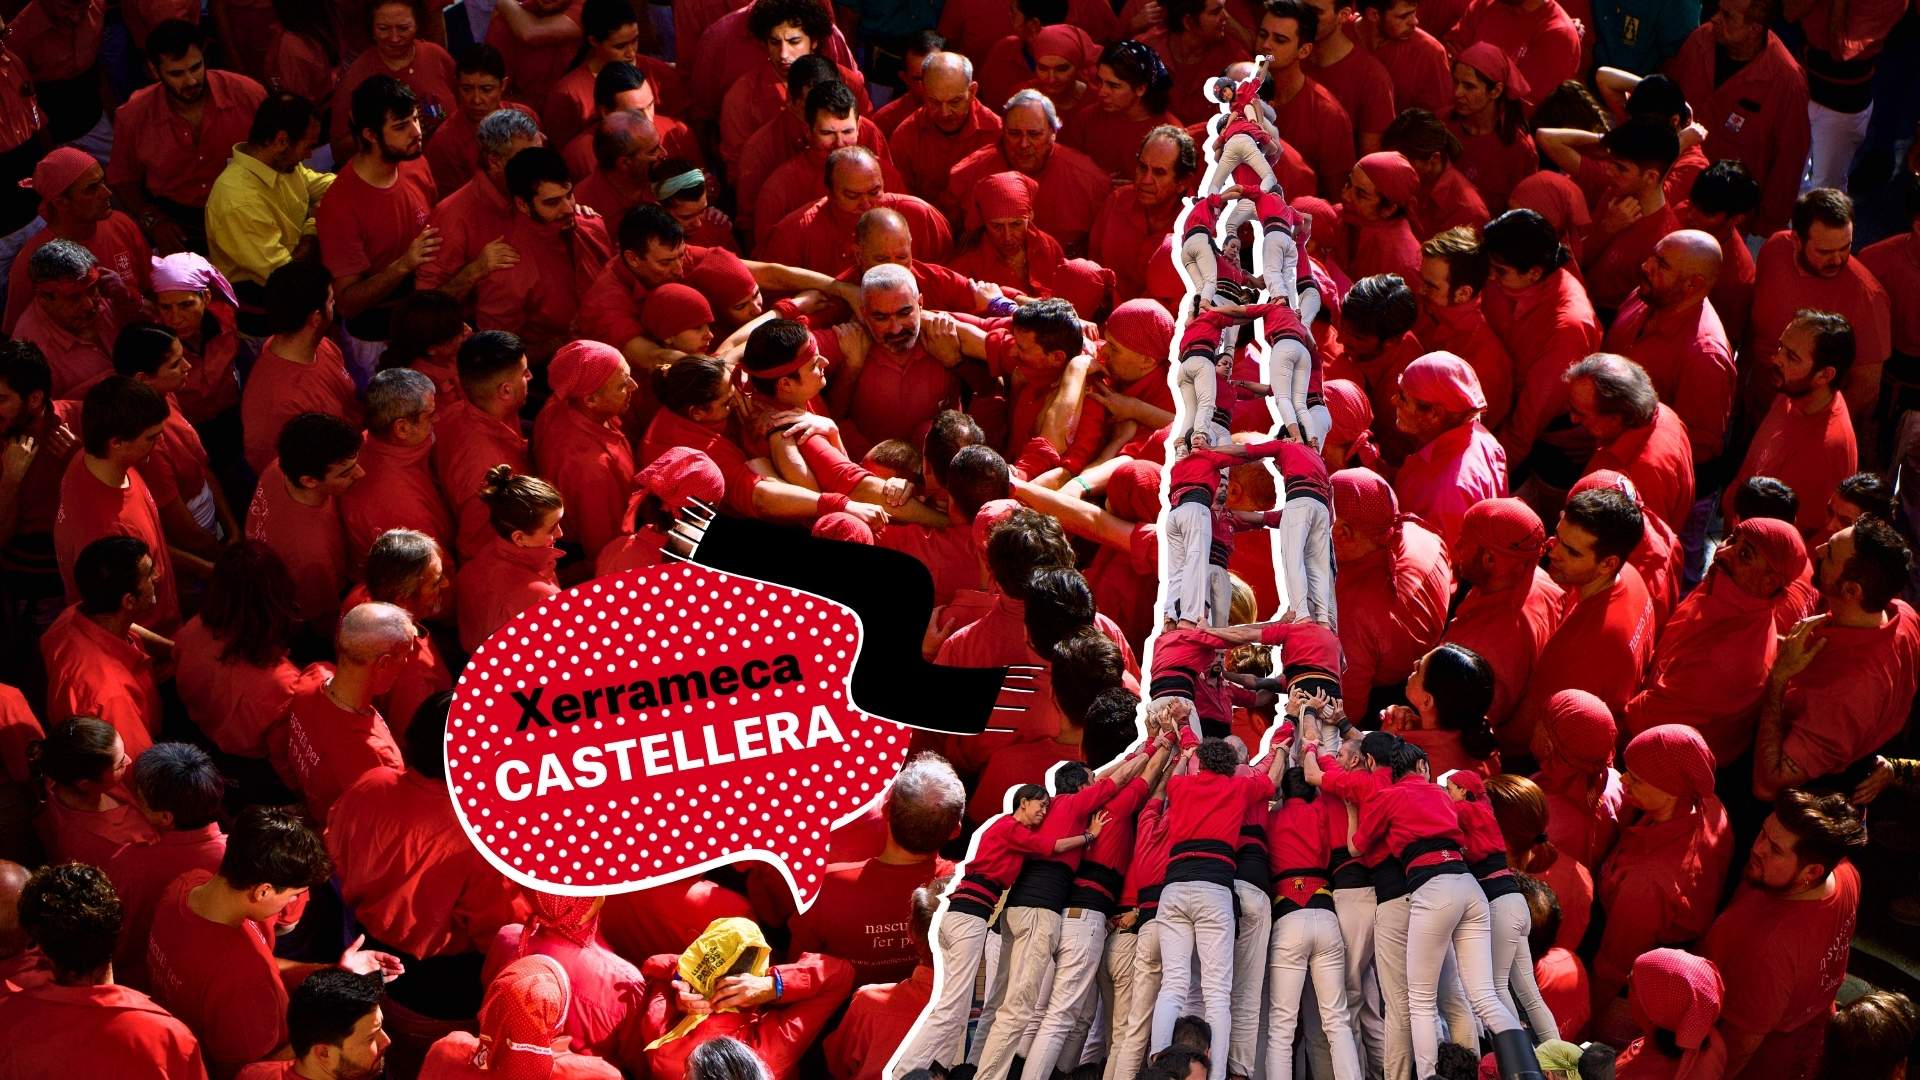 Castell, castellet o casteller? Com n’hem de dir de la tradició catalana?